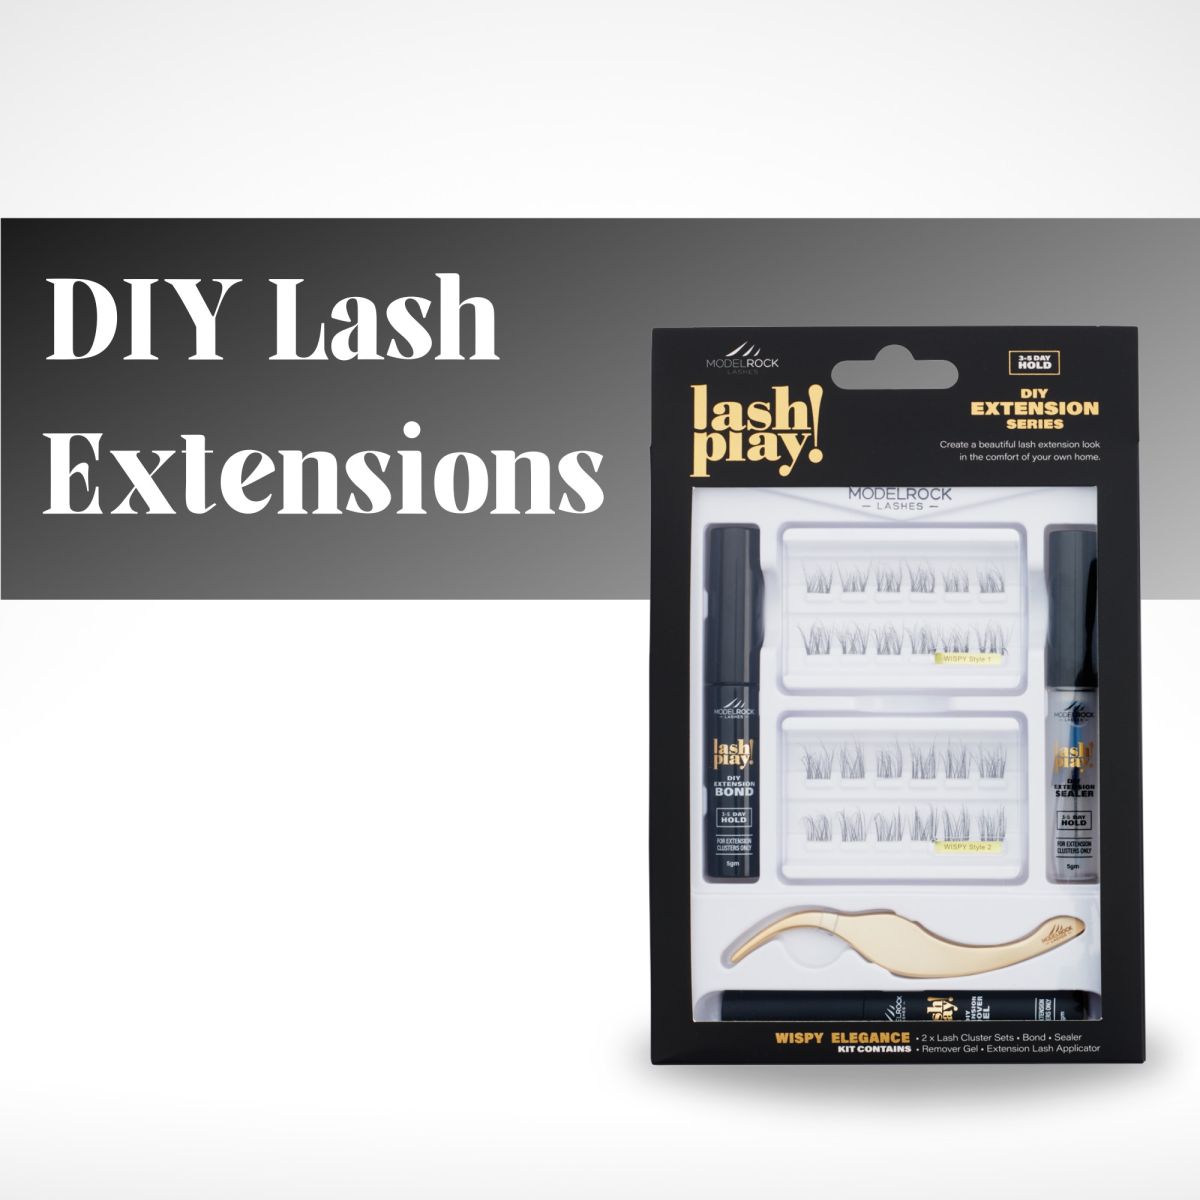 Modelrock DIY lash extensions